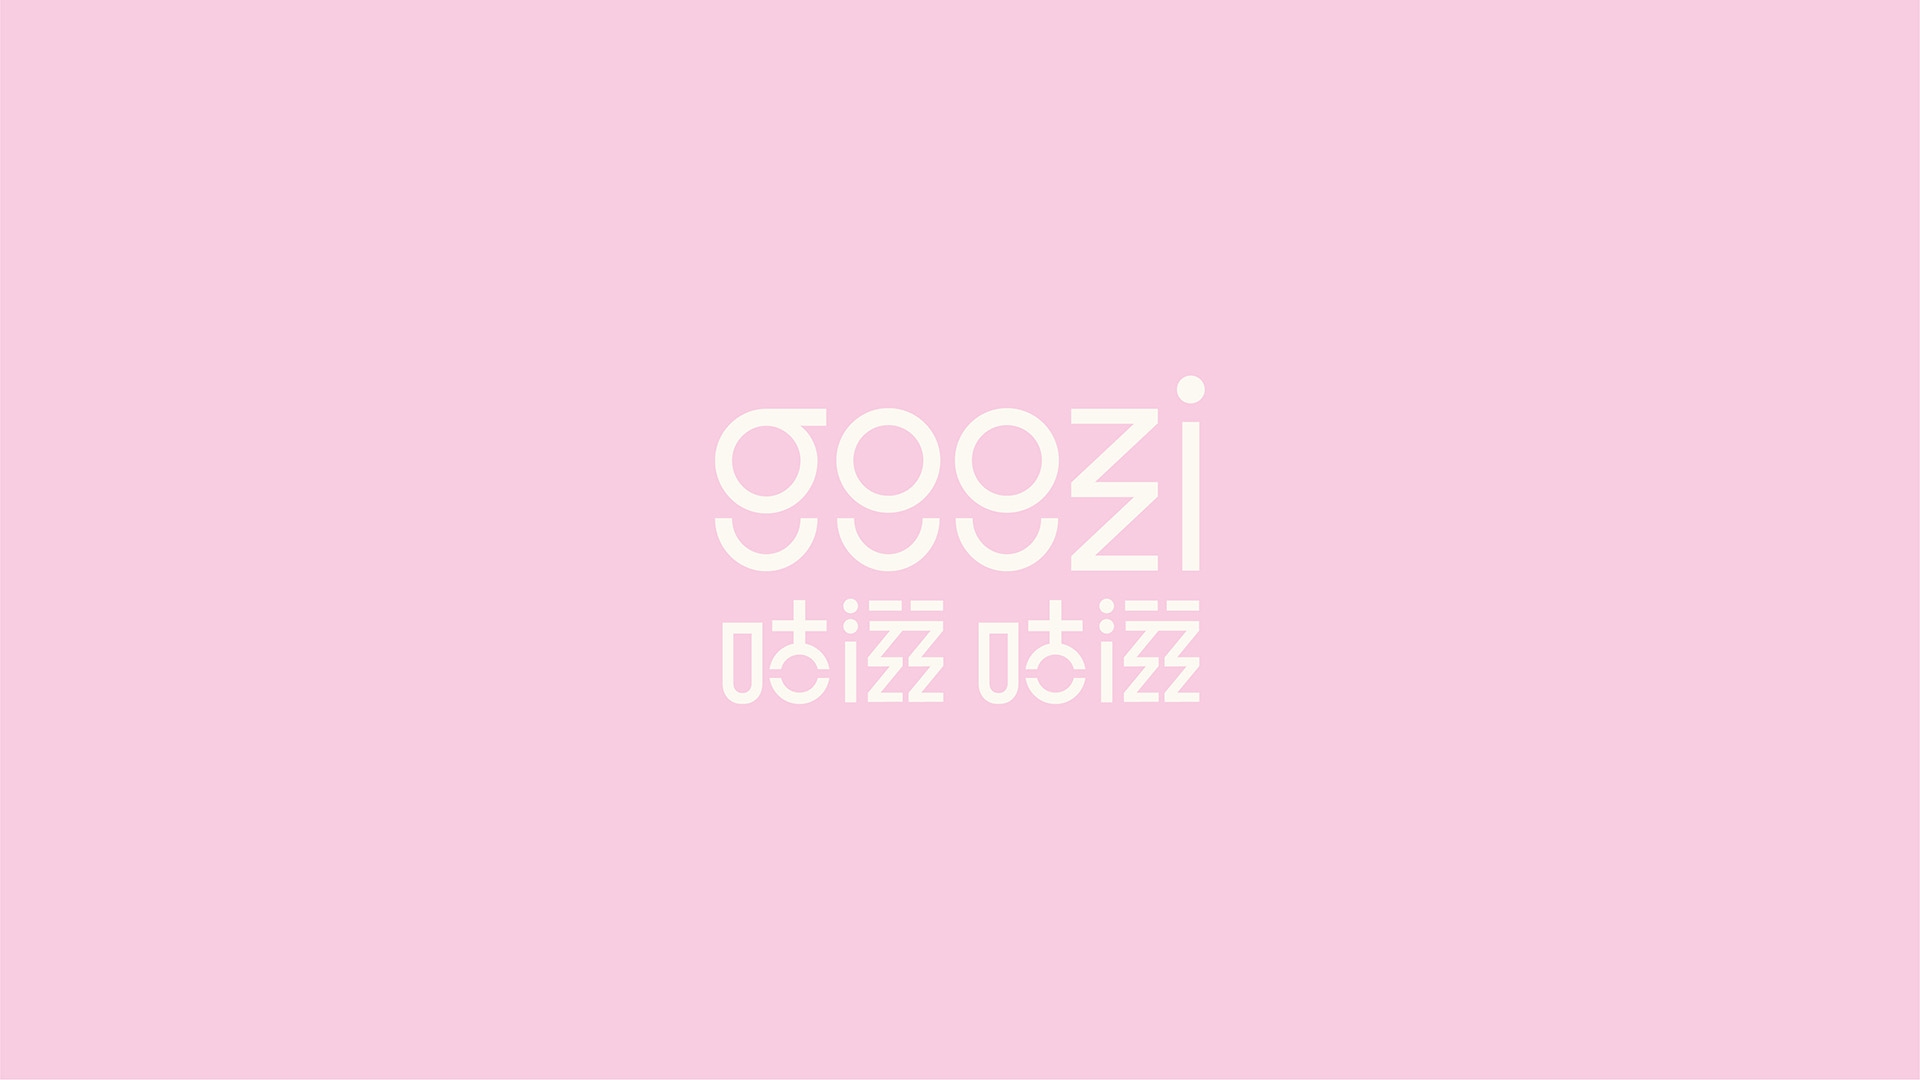 goozi goozi branding & packaging design